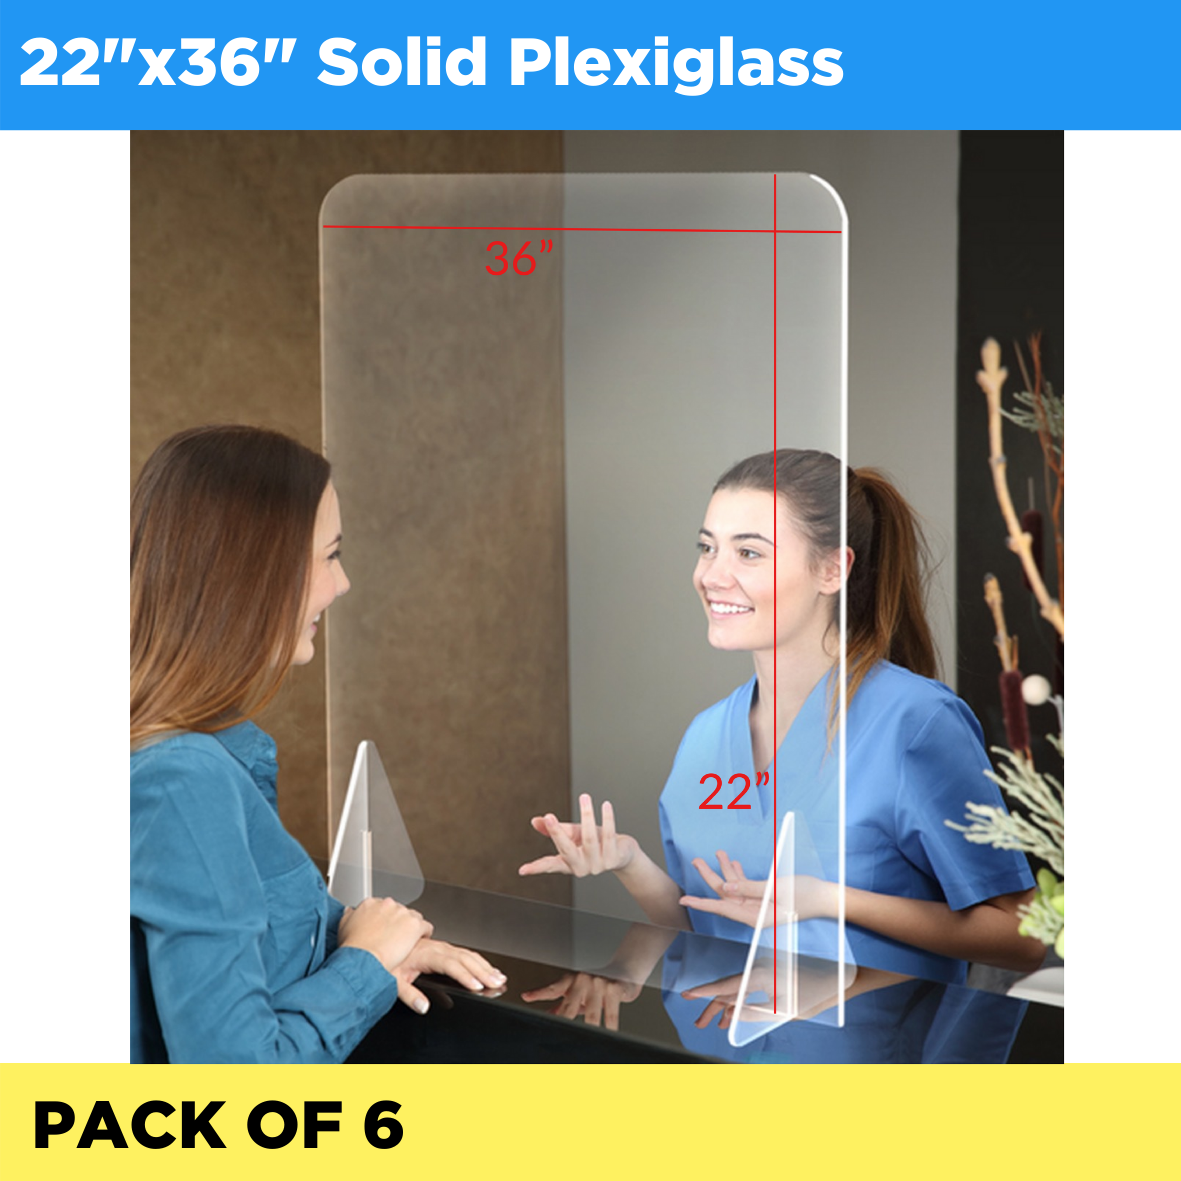 Plexiglass Solid 22" x 36" - Pack of 6 (Listing ID: 6617450414149)